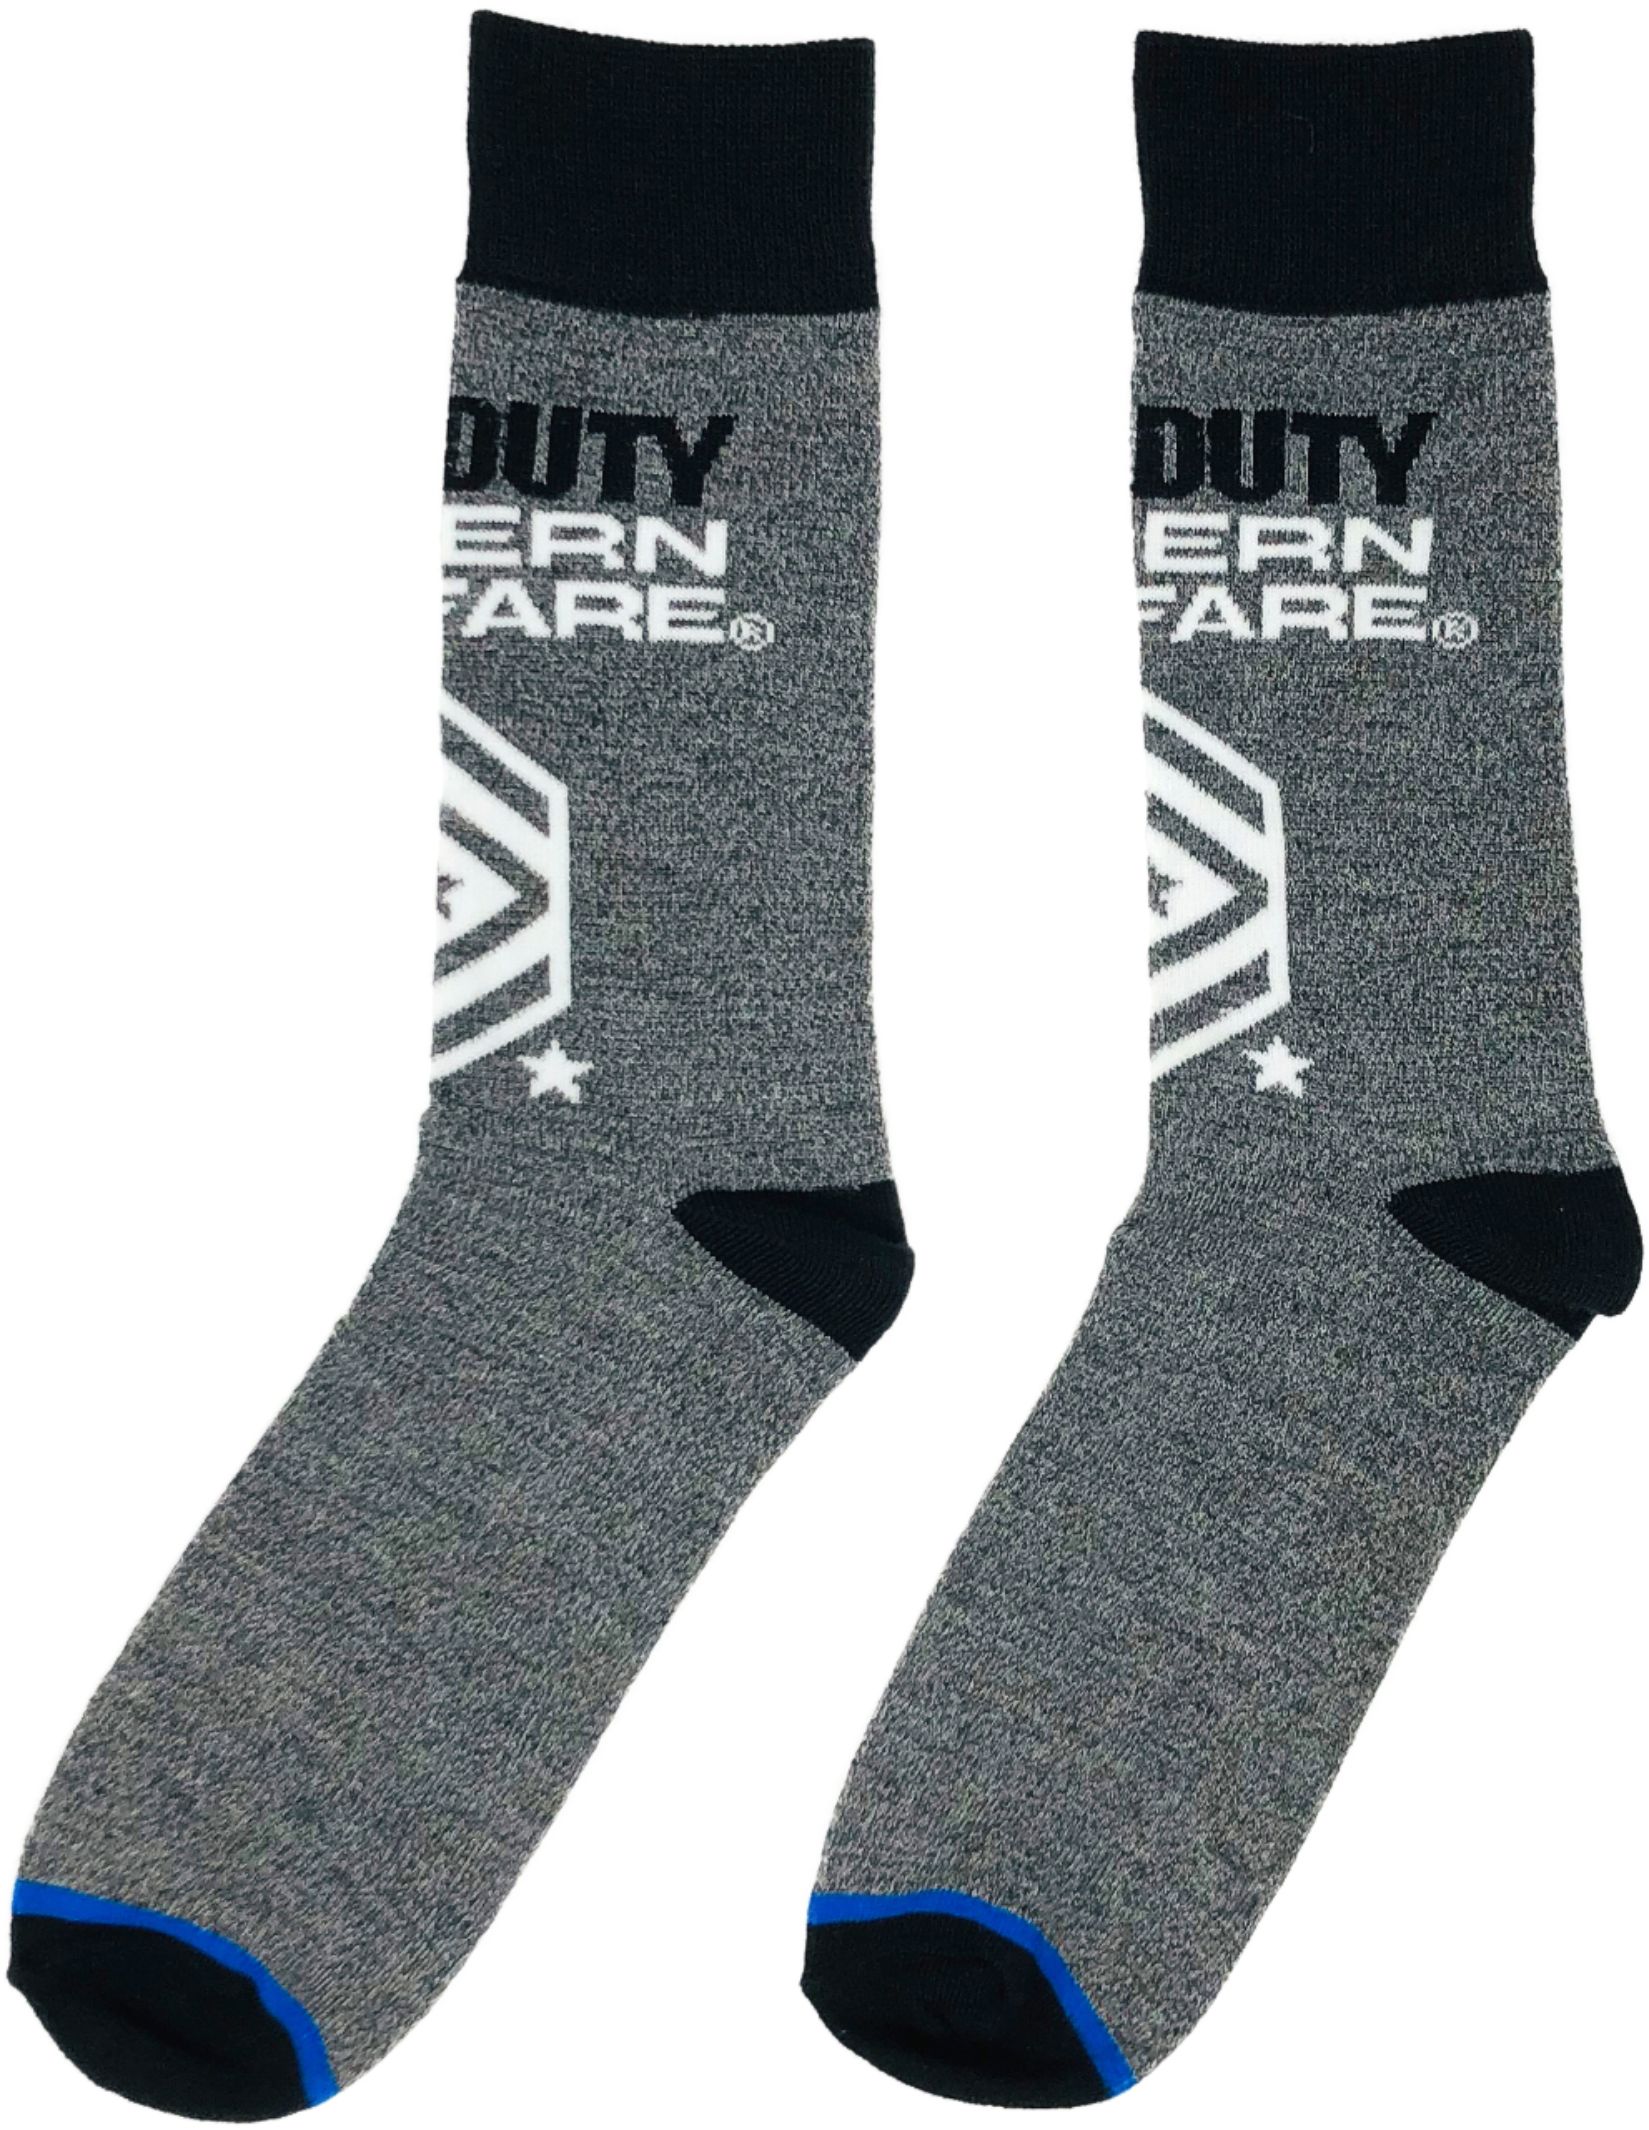 duty socks